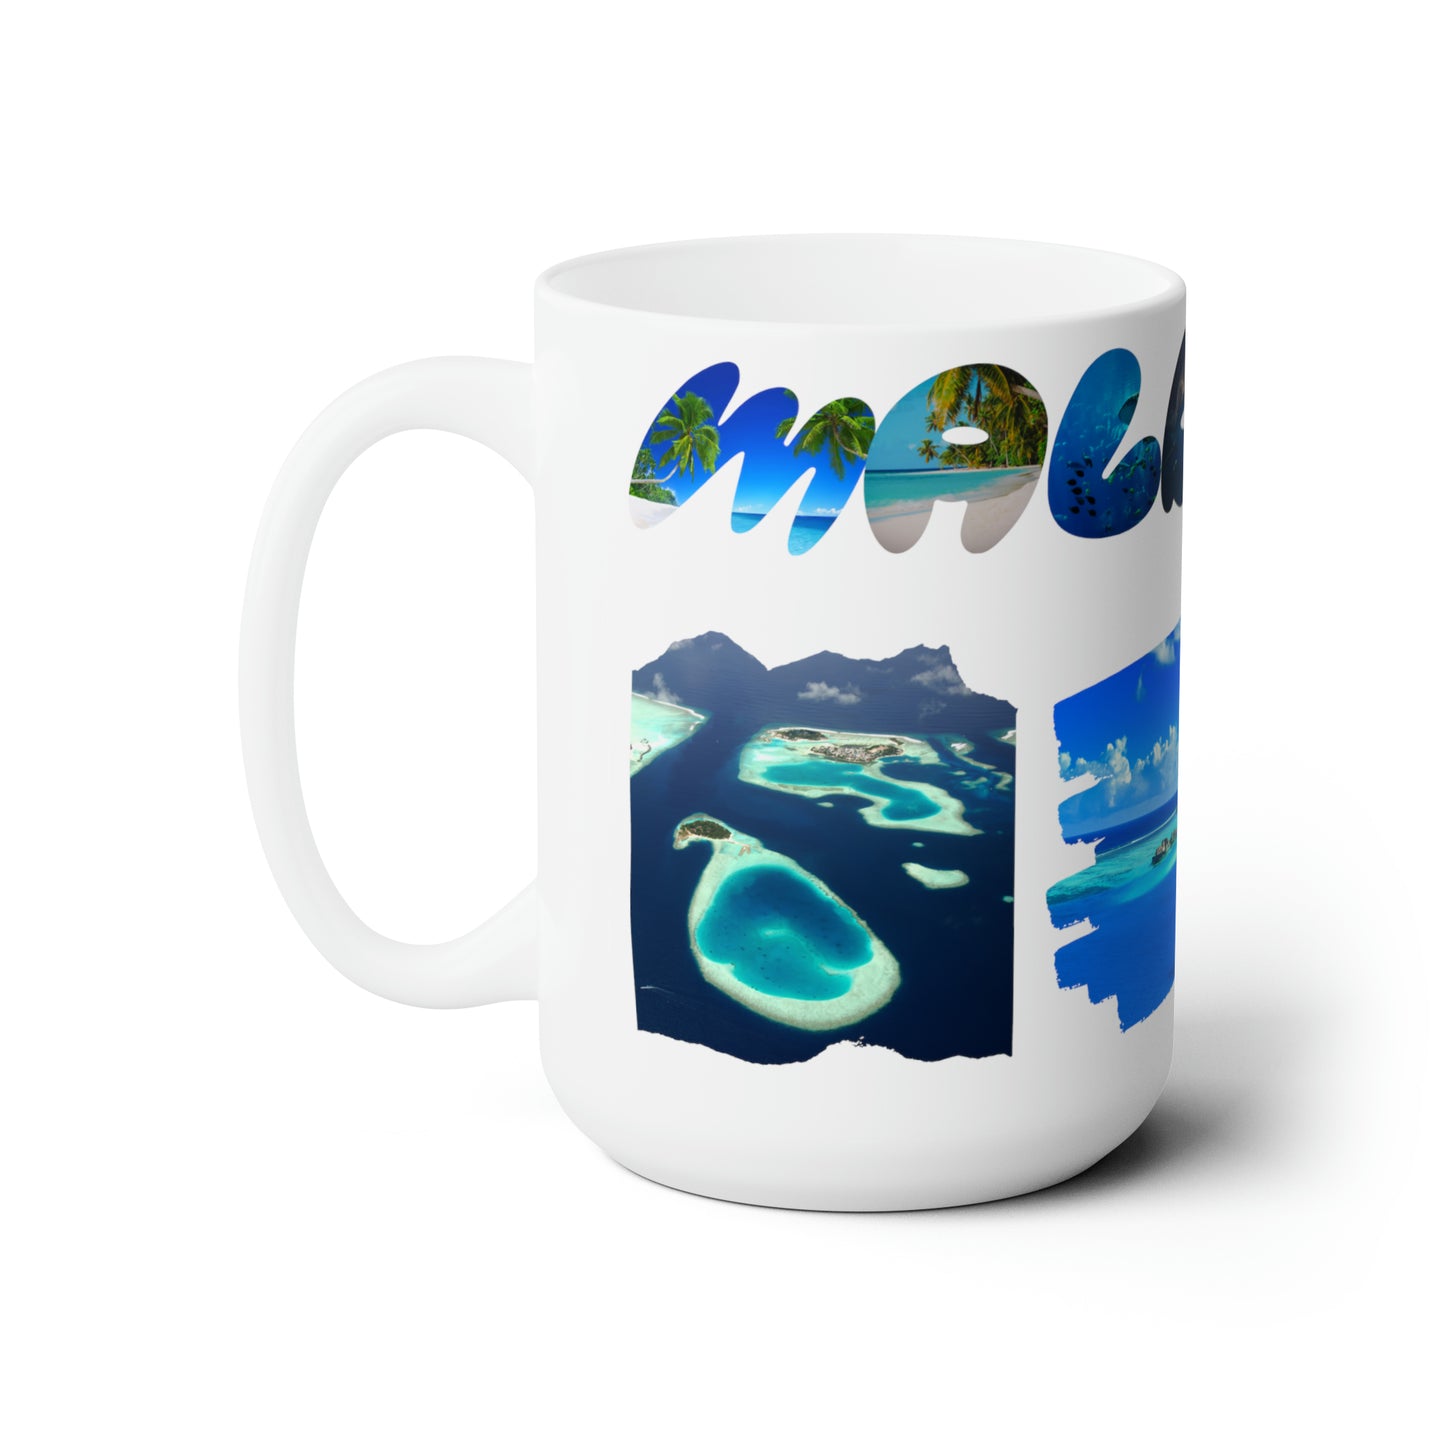 Maldives - Ceramic Mug 15oz